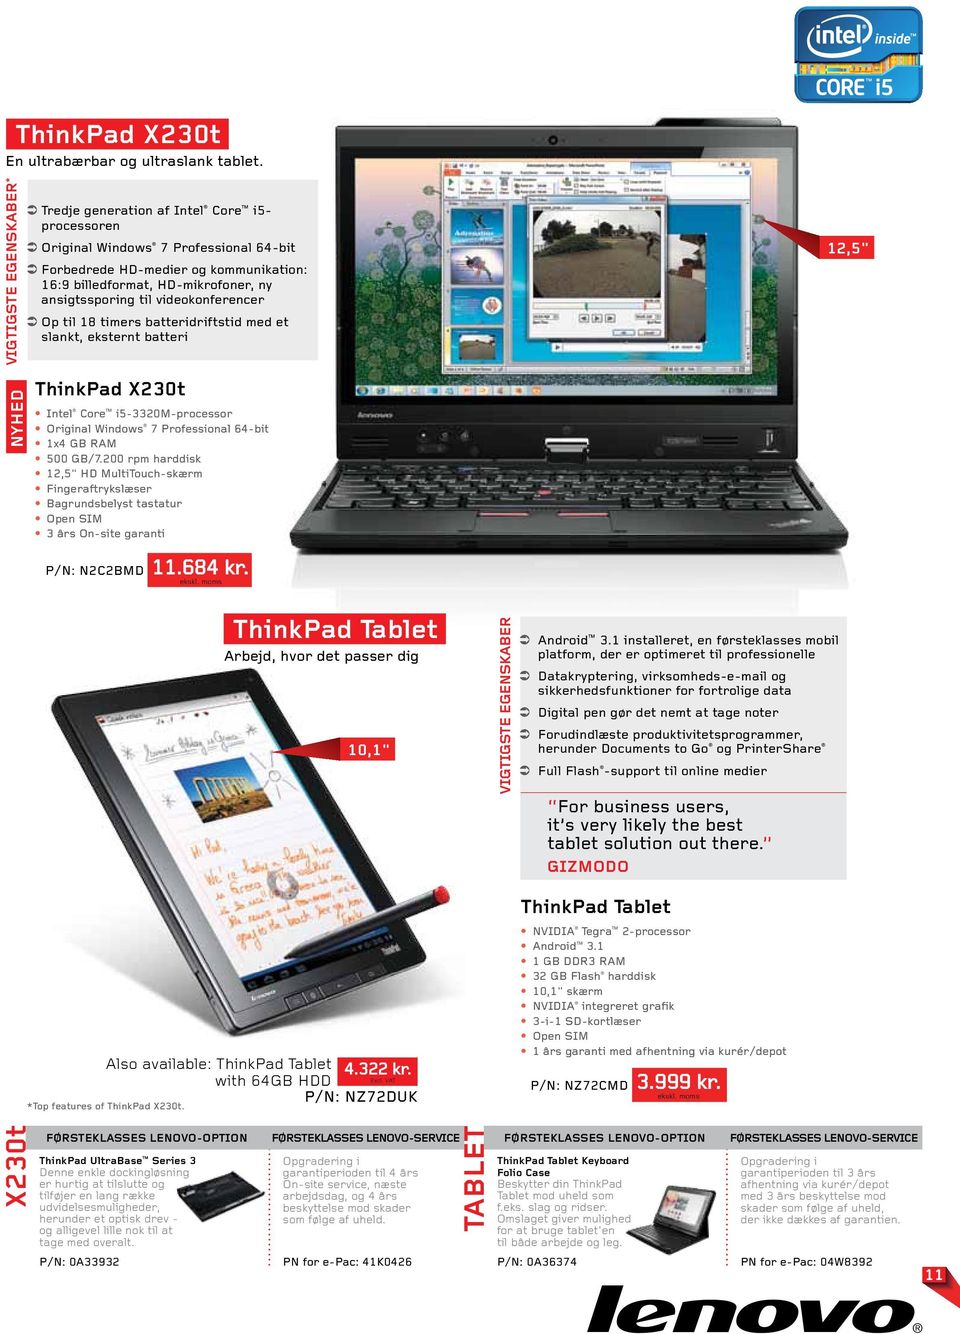 et slankt, eksternt batteri 12,5" ThinkPad X230t Intel Core i5-3320m-processor 1x4 GB RAM 500 GB/7.